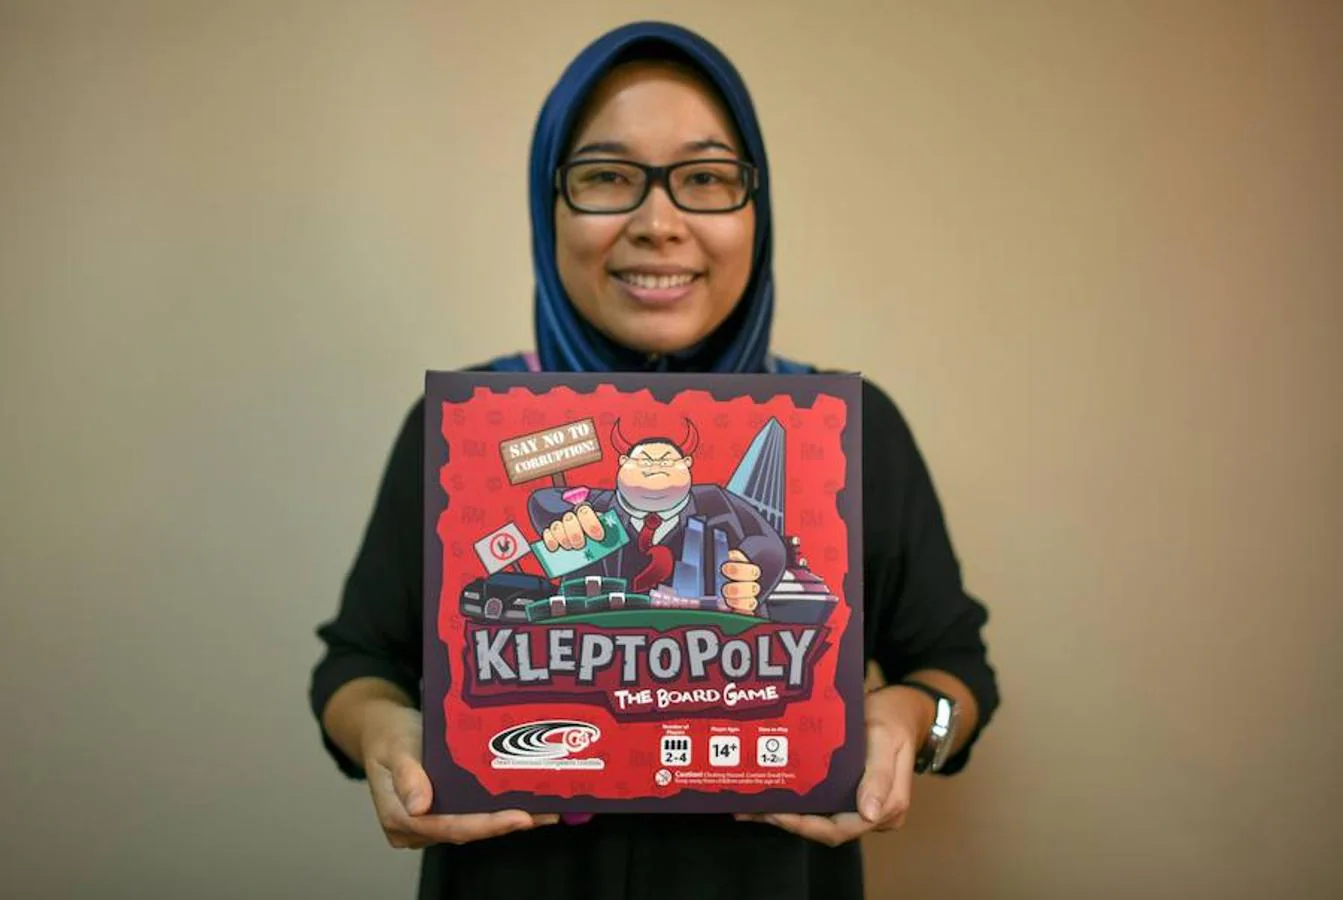 El Kleptopoly es un juego creado en Malasia para combatir la corrupción.